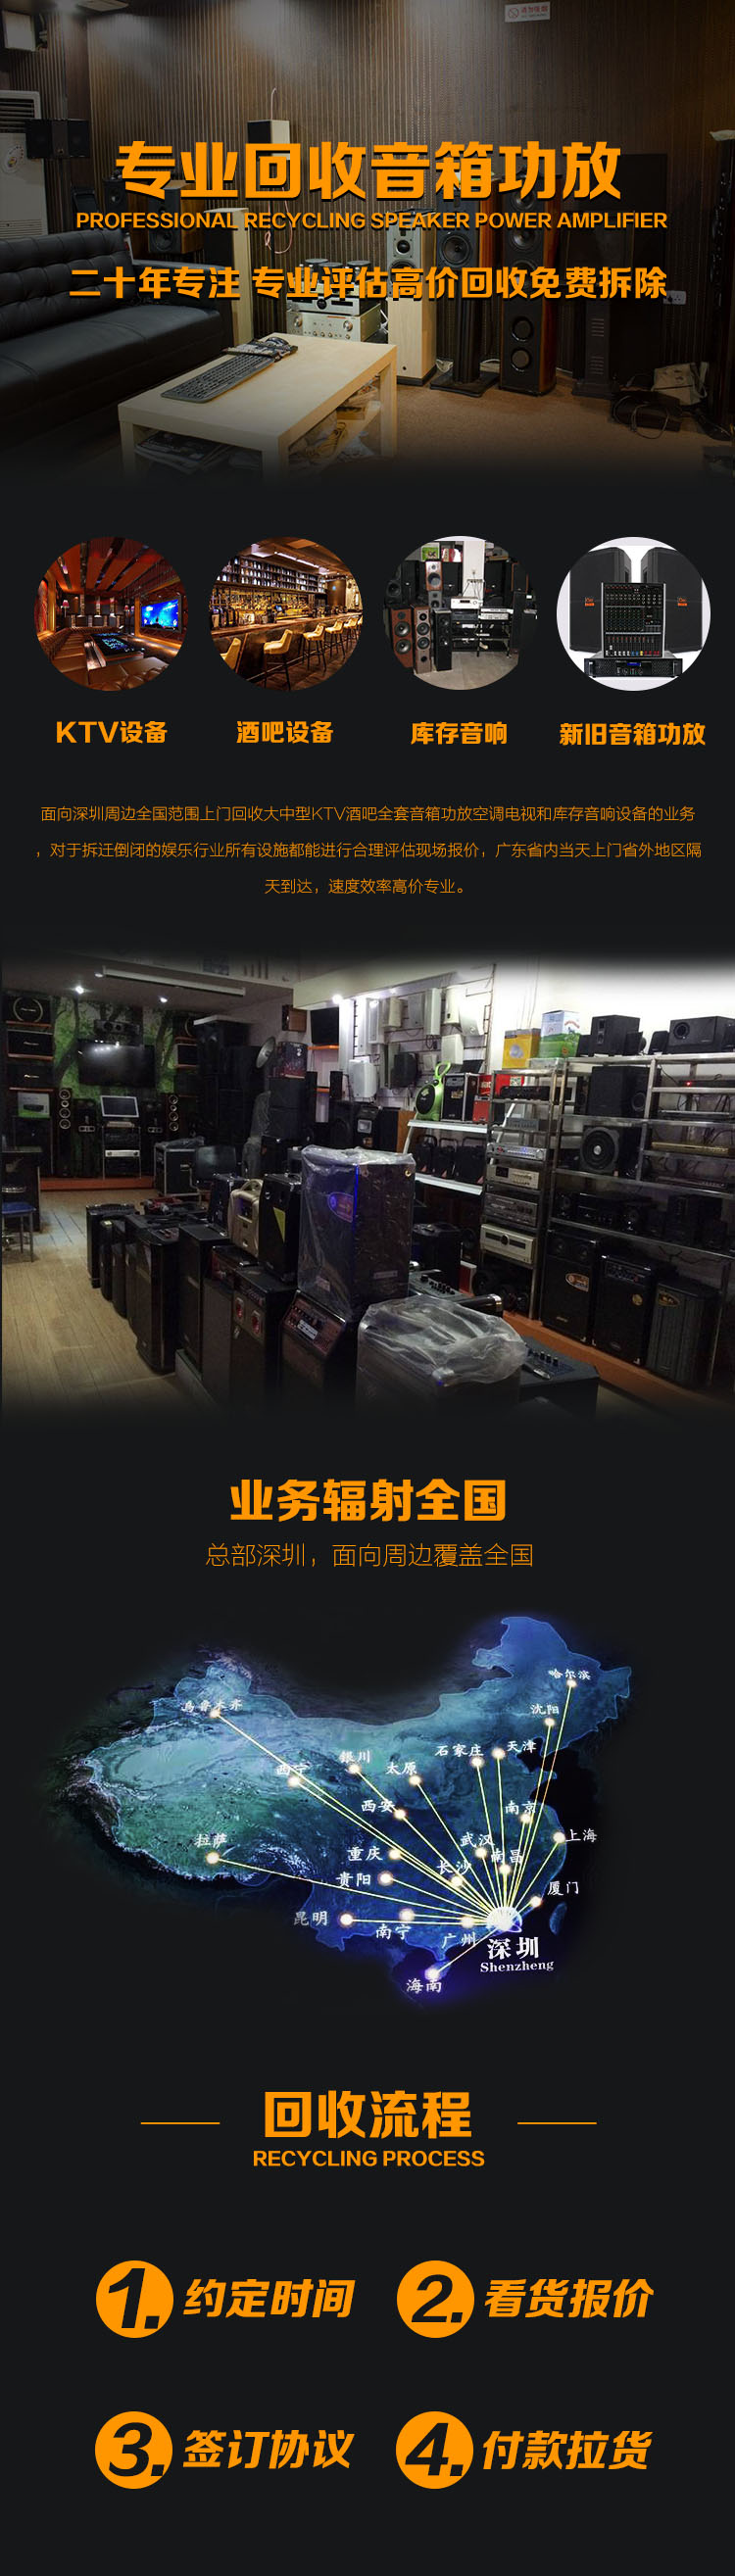 音响设备回收深圳回收KTV酒吧设备